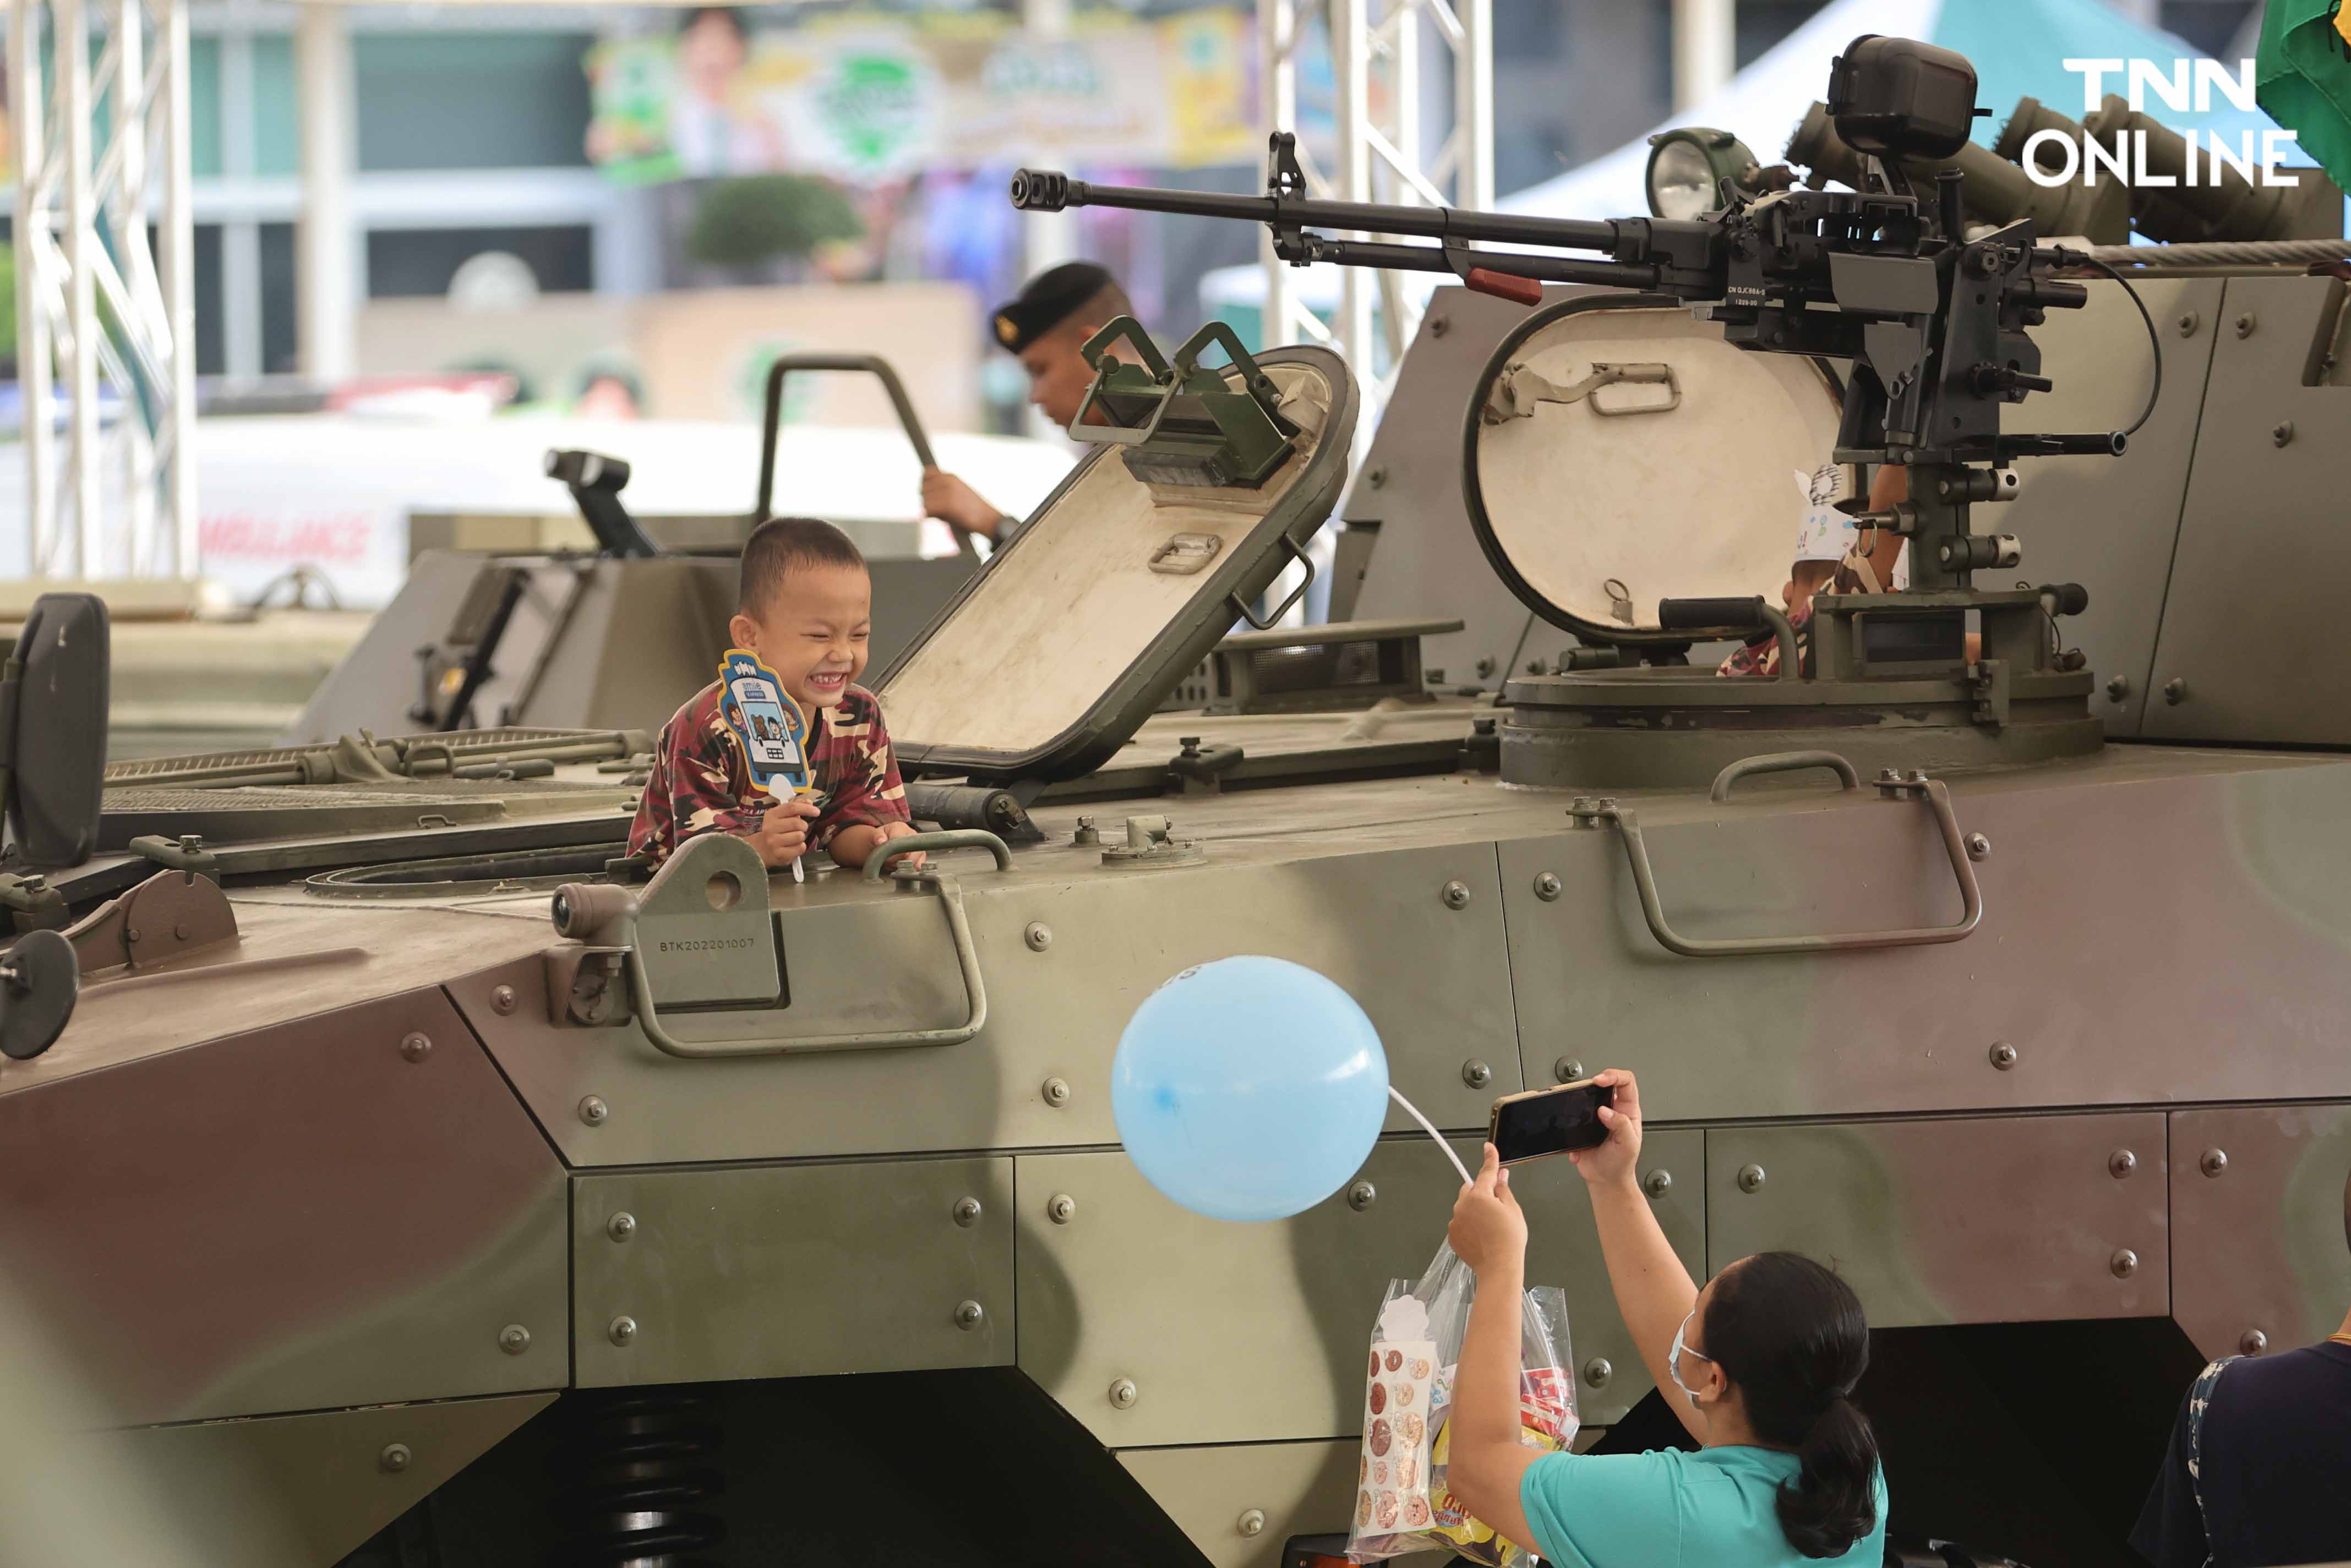 เด็กสวมชุดทหาร เที่ยวชมรถถังอย่างใกล้ชิดเนื่องในวันเด็กแห่งชาติ